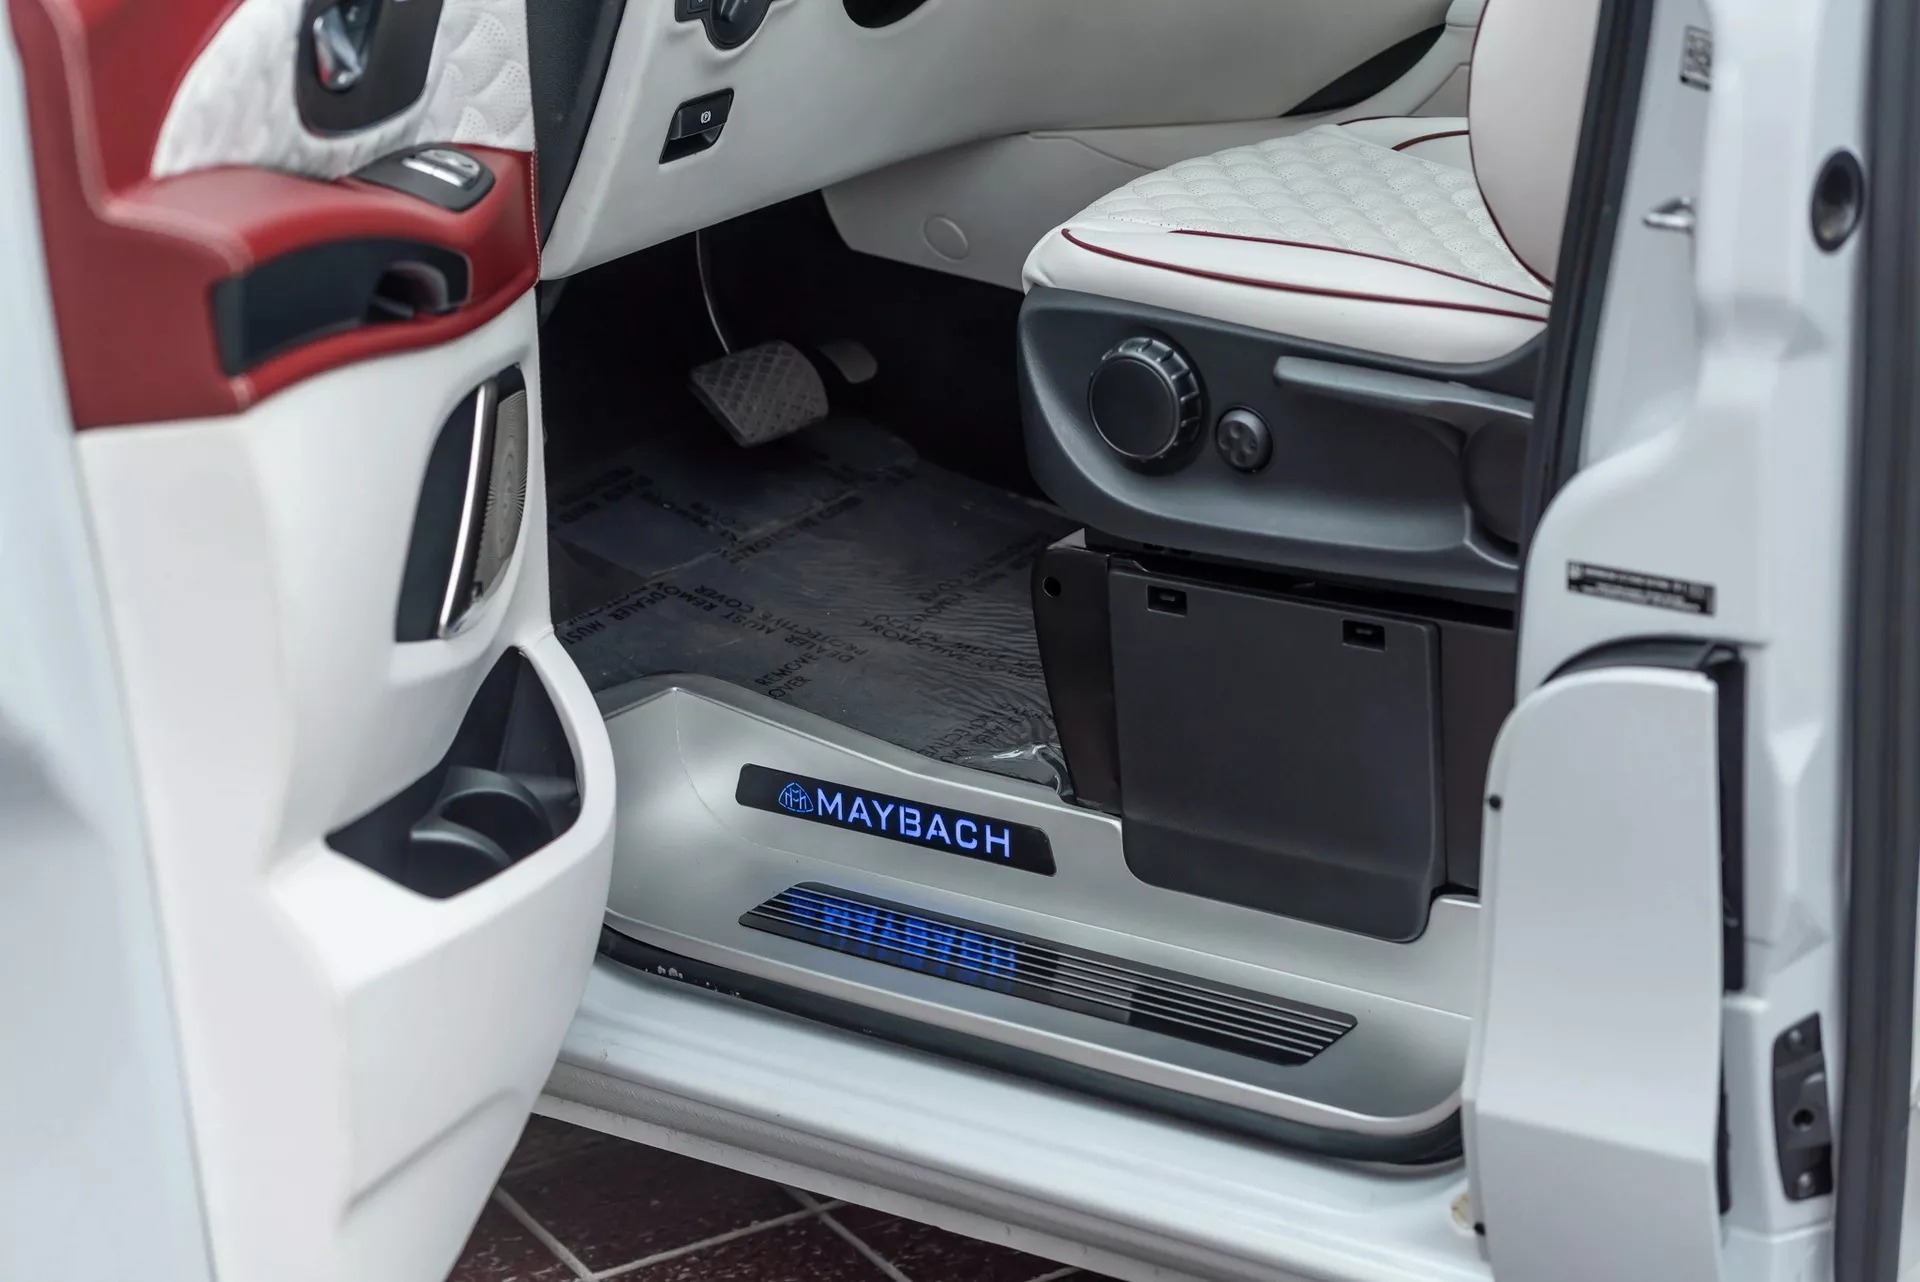 Chủ xe độ van Mercedes-Benz thành Maybach với tiền đủ mua S-Class mới - Ảnh 7.